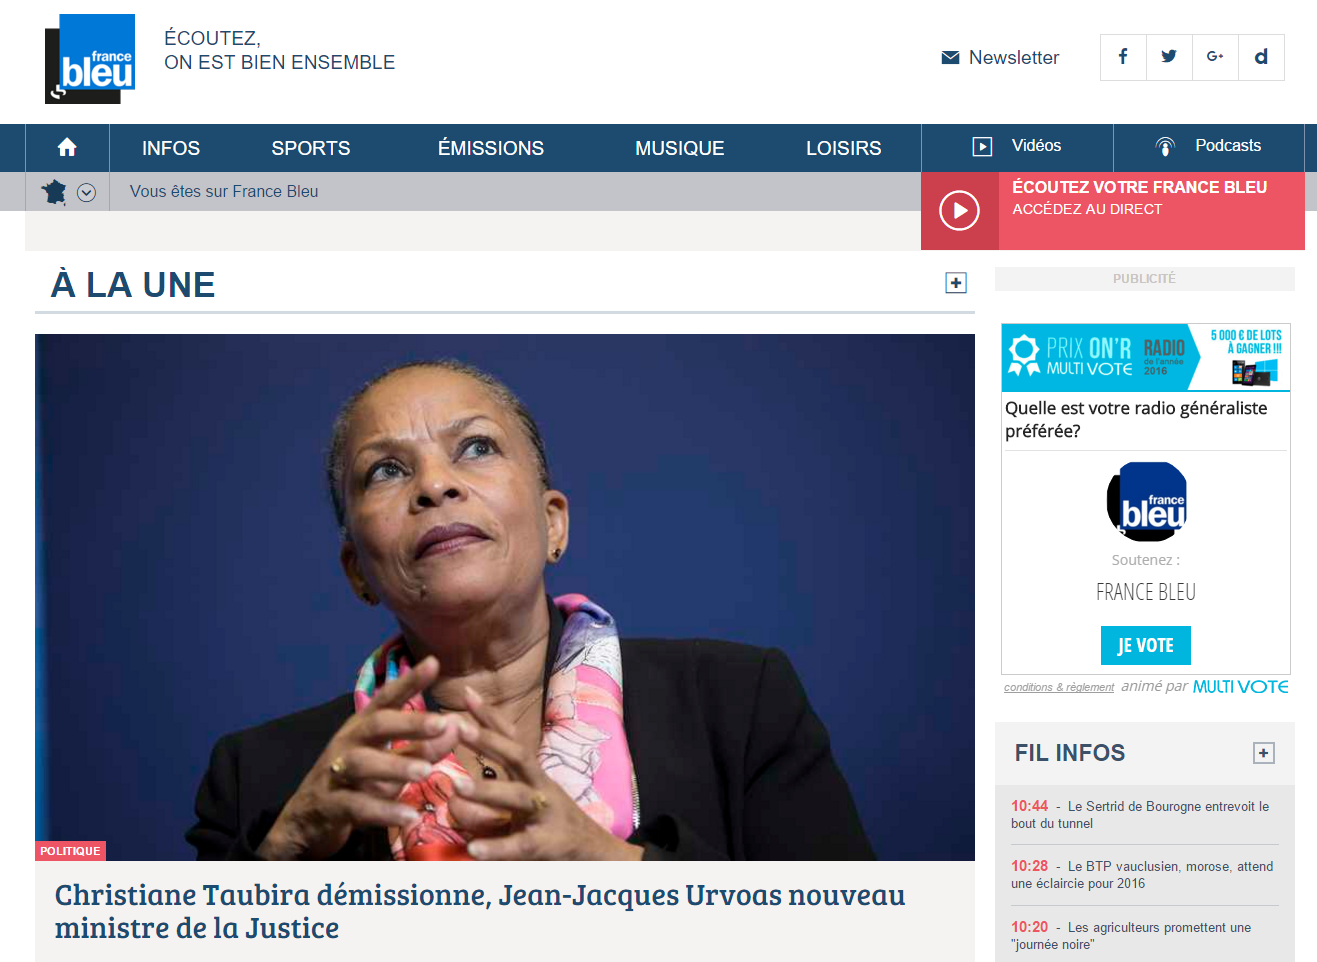 France Bleu a intégré le code iframe sur la page d'accueil de son site et mobilise fortement sa communauté depuis ce matin